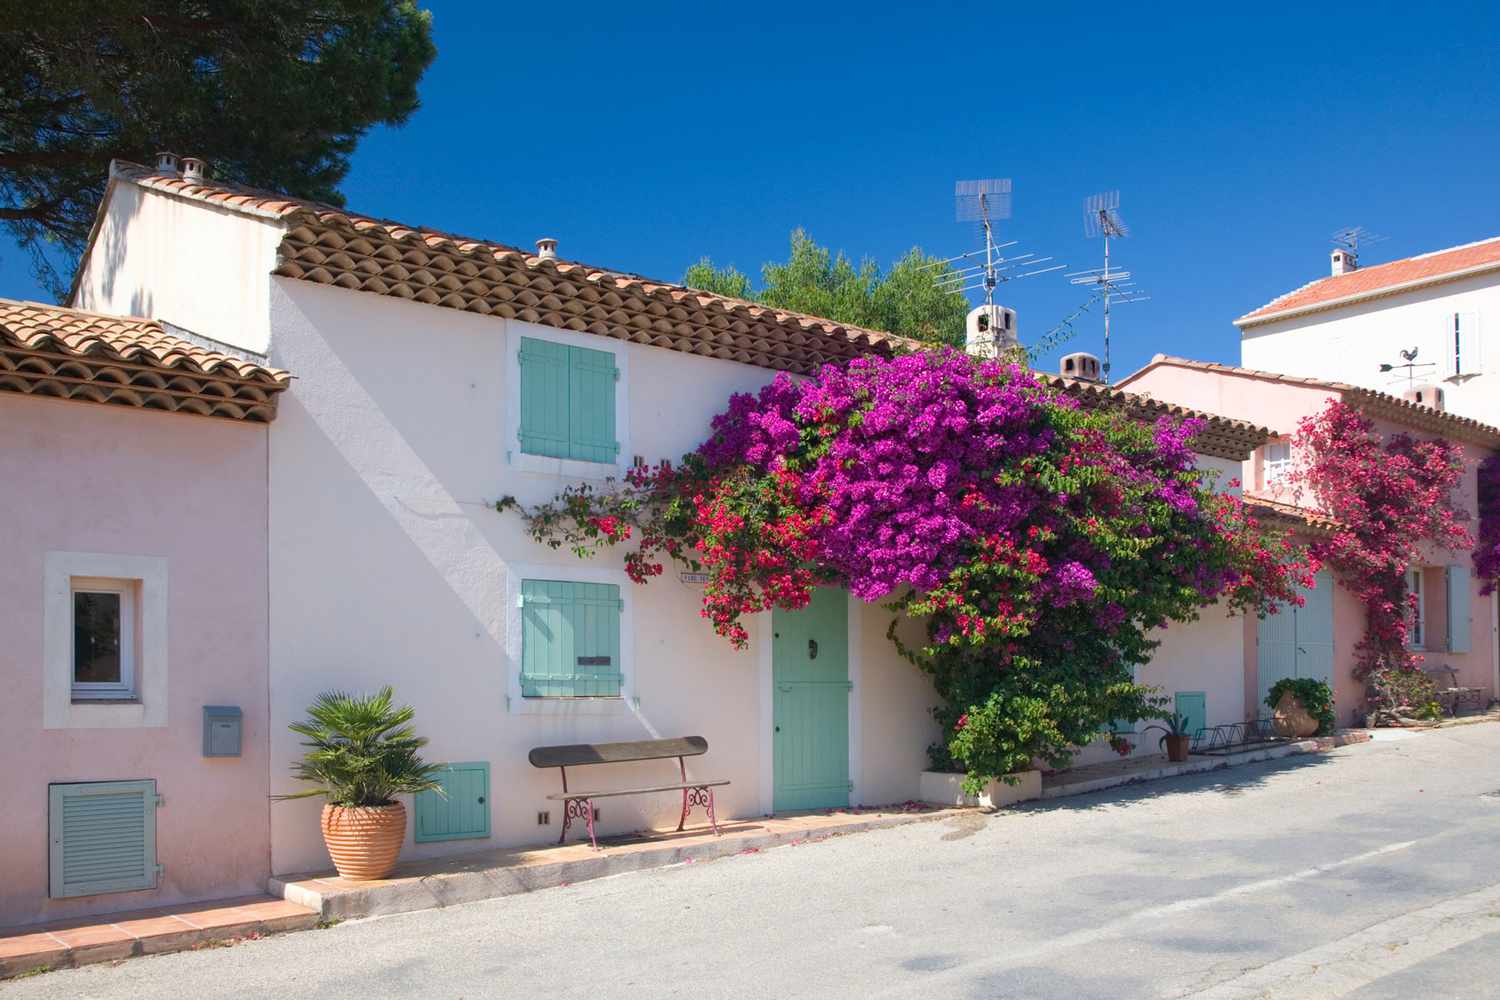 Maisons de village typiques de couleur rose aux accents turquoise à Porquerolles, France